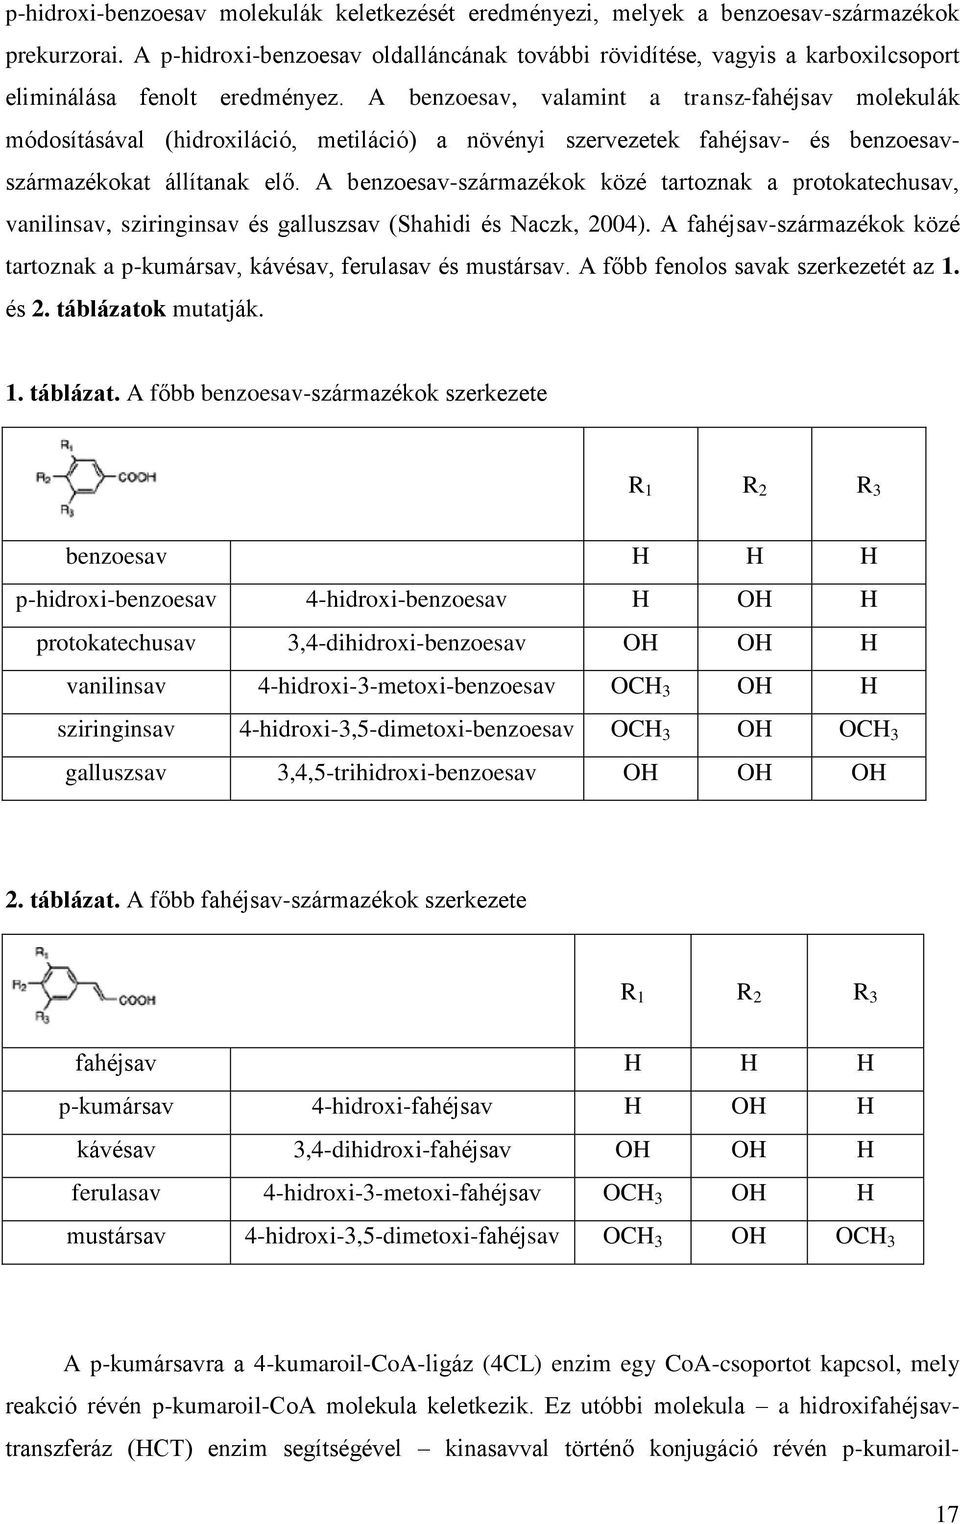 A benzoesav, valamint a transz-fahéjsav molekulák módosításával (hidroxiláció, metiláció) a növényi szervezetek fahéjsav- és benzoesavszármazékokat állítanak elő.